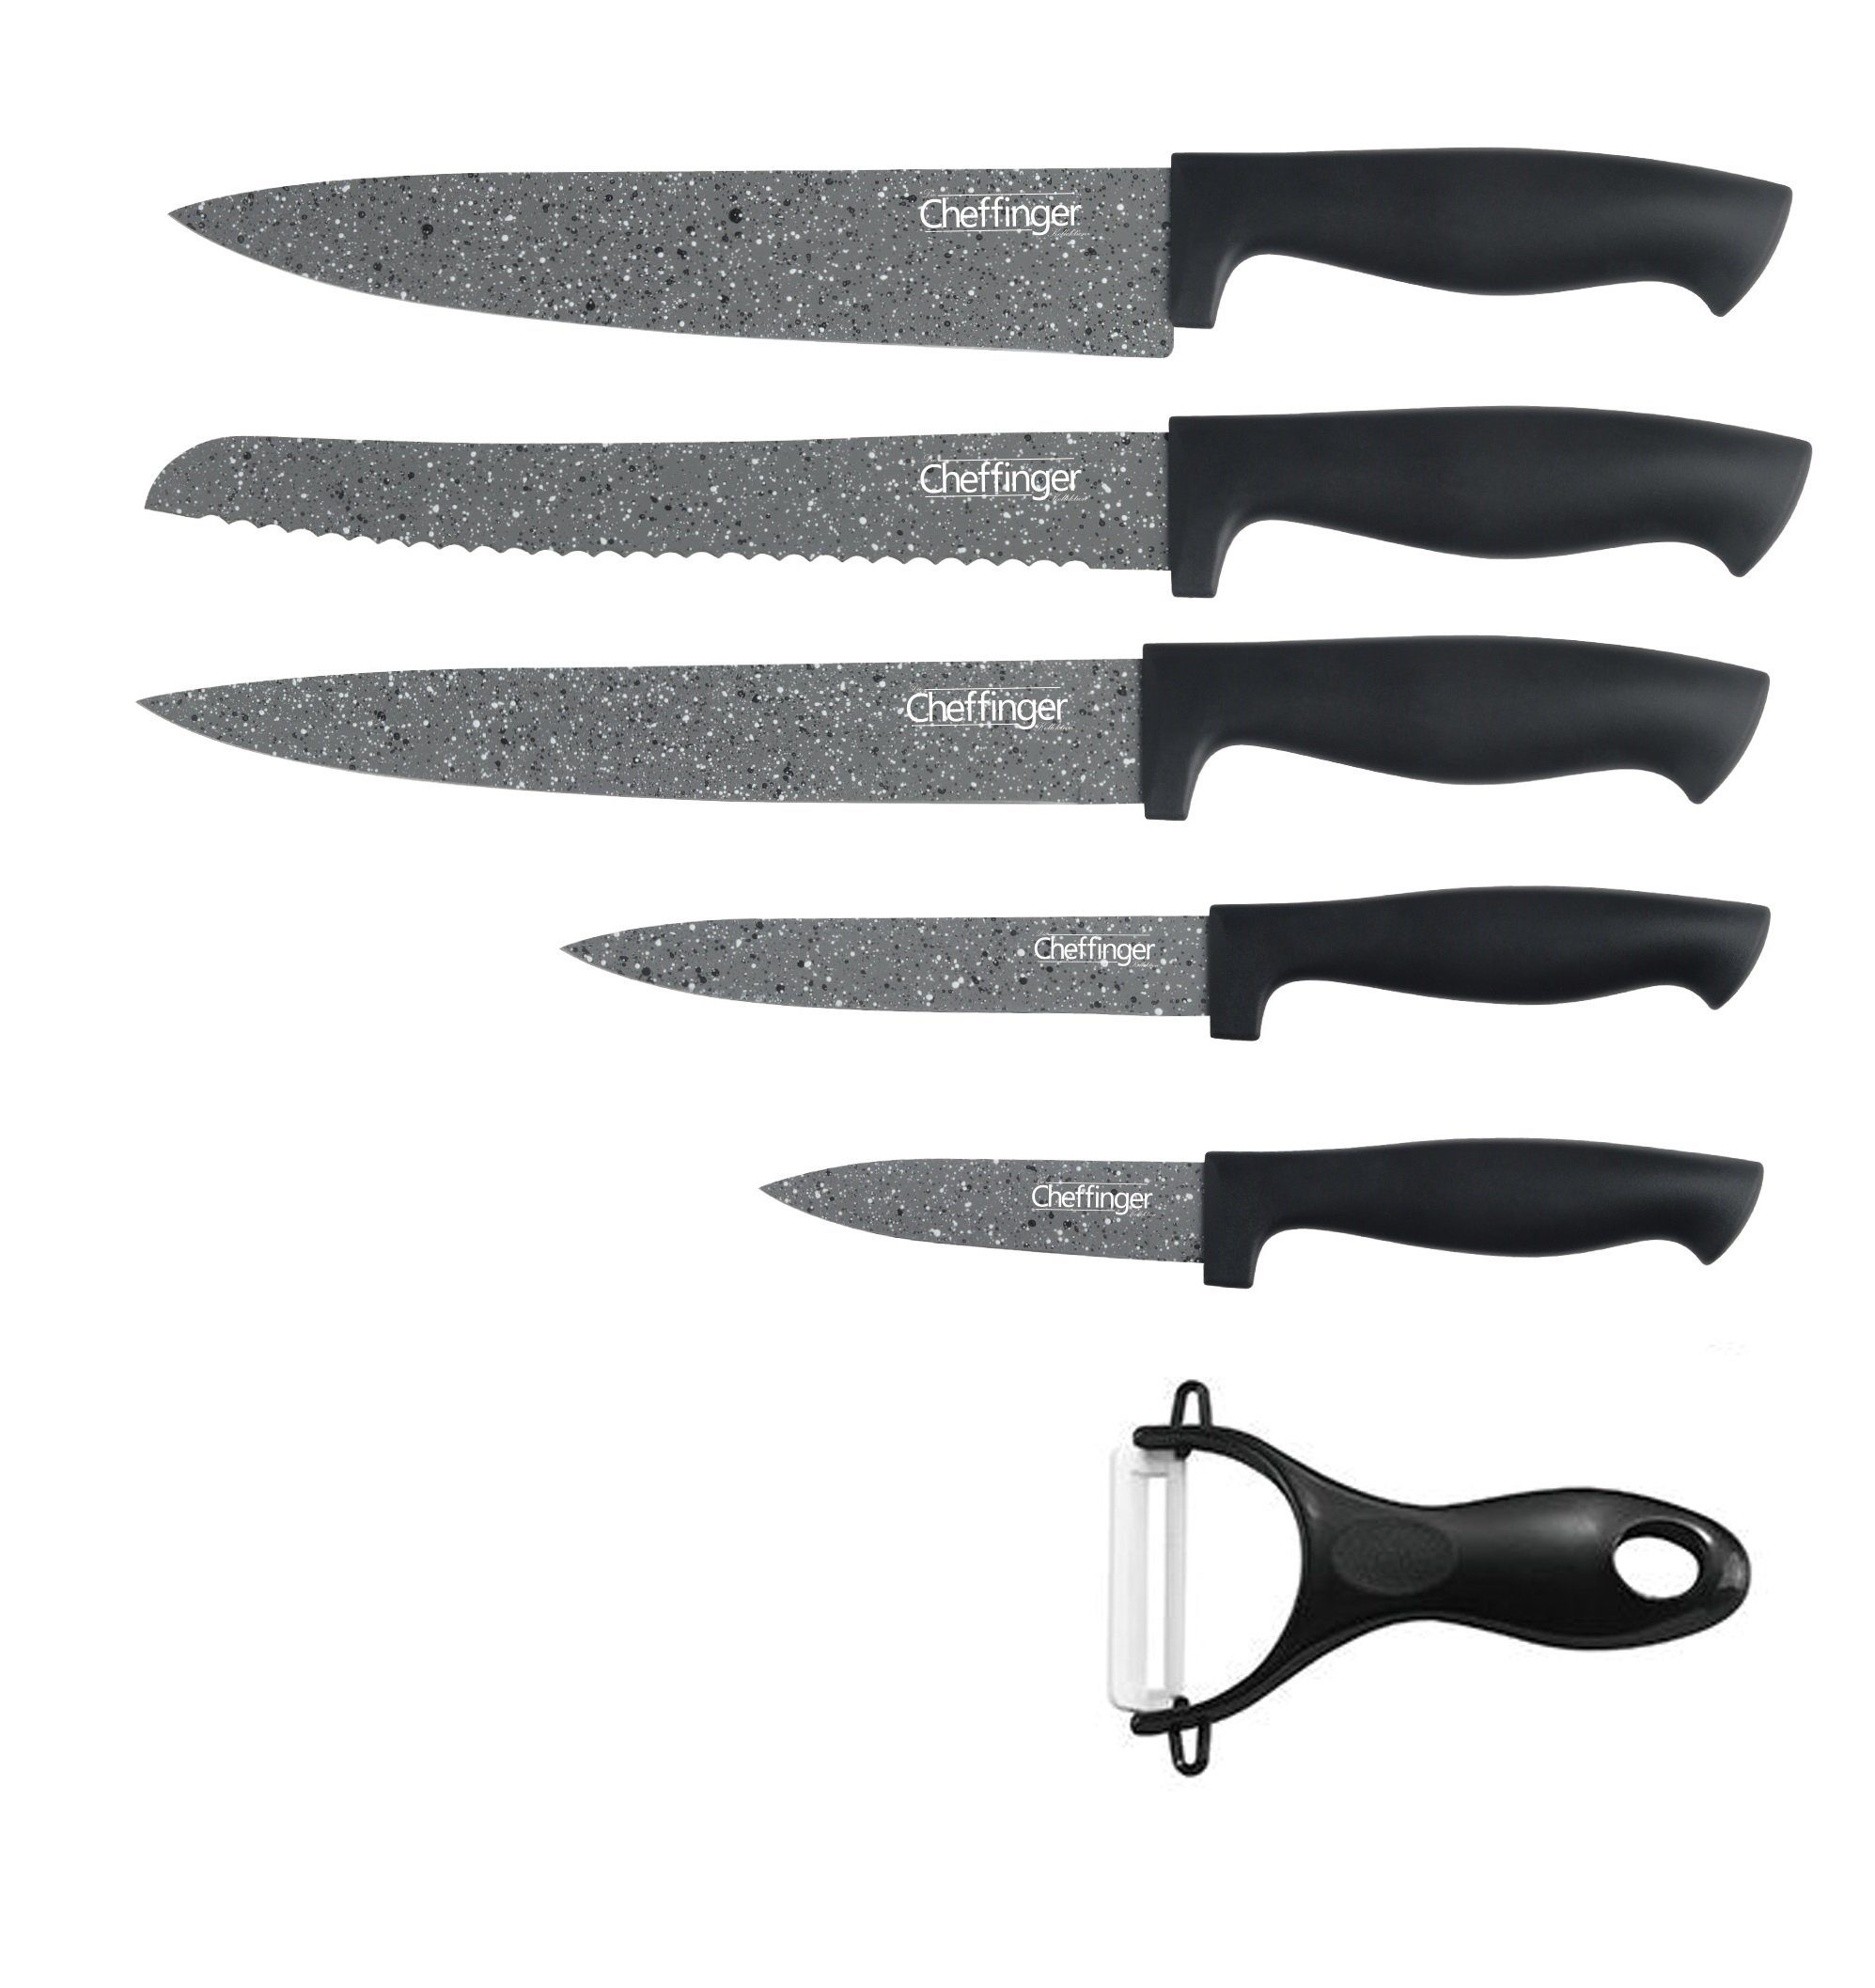 Cheffinger Messer-Set 6 teiliges Messerset (5 Messer & 1 Sparschäler) in Klappbox mit Magnetverschluss scharfe Messerklingen Küchenmesser Chefmesser Pizzamesser grau